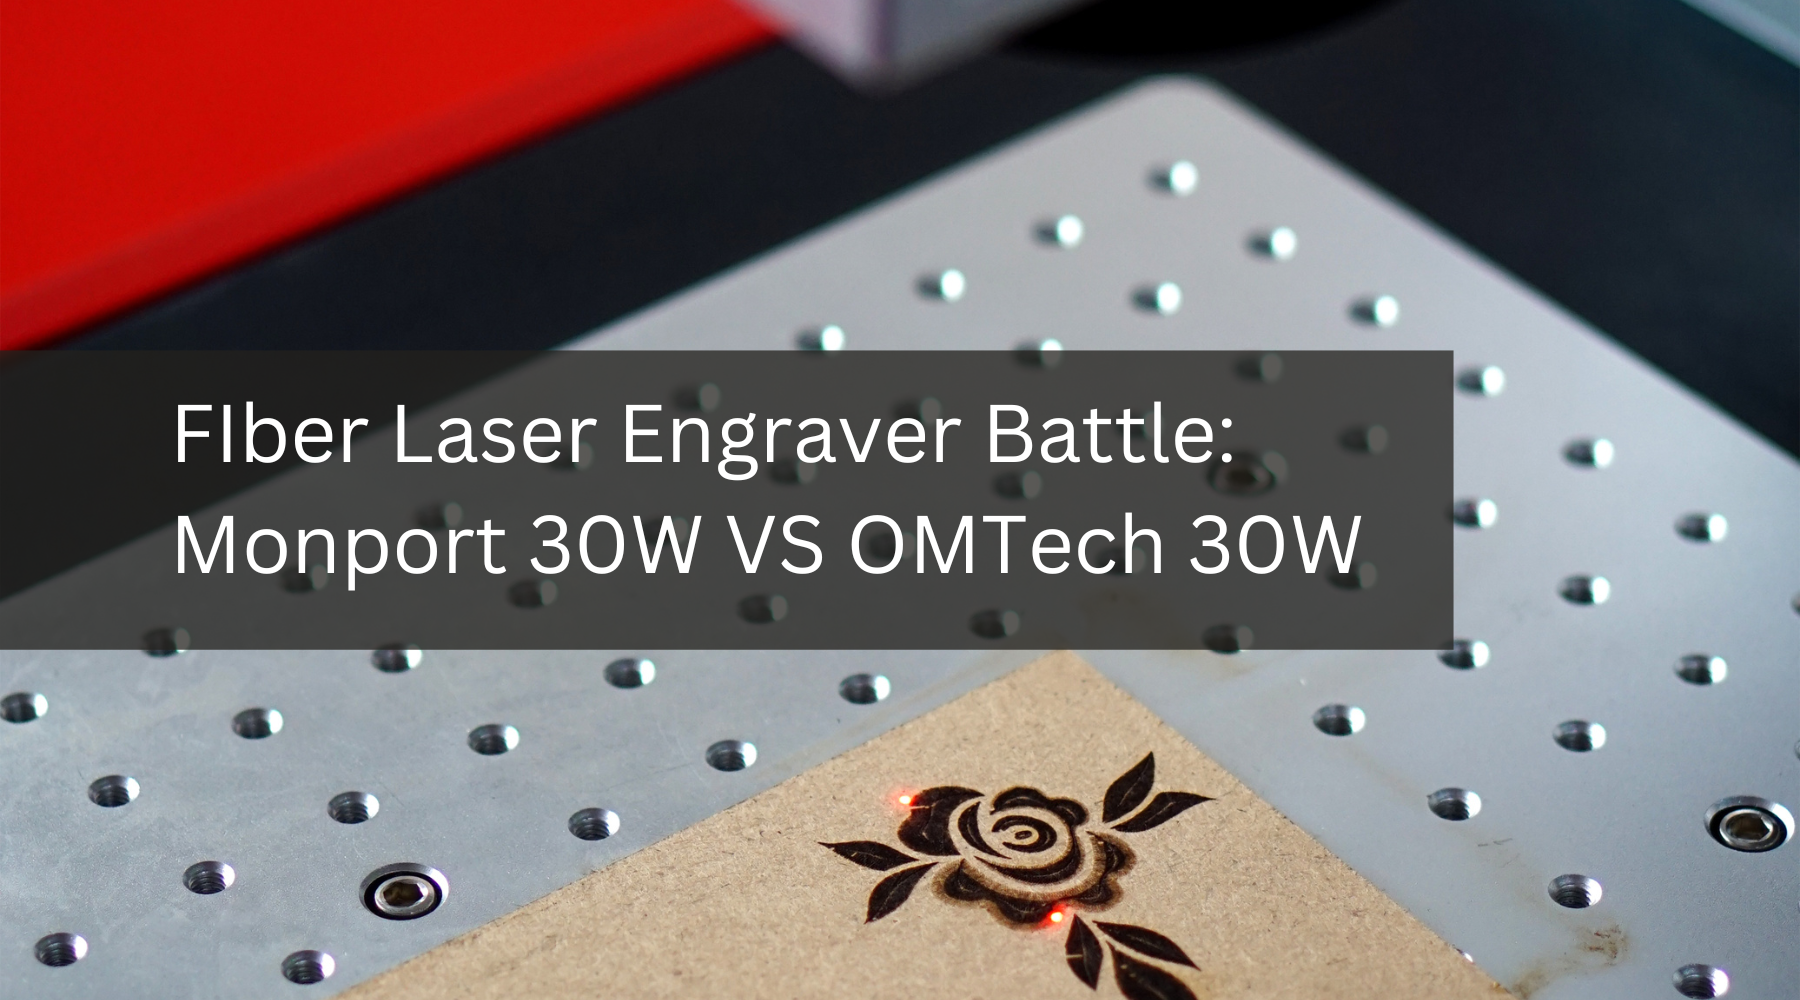 FIber Laser Engraver Battle: Monport 30W VS OMTech 30W